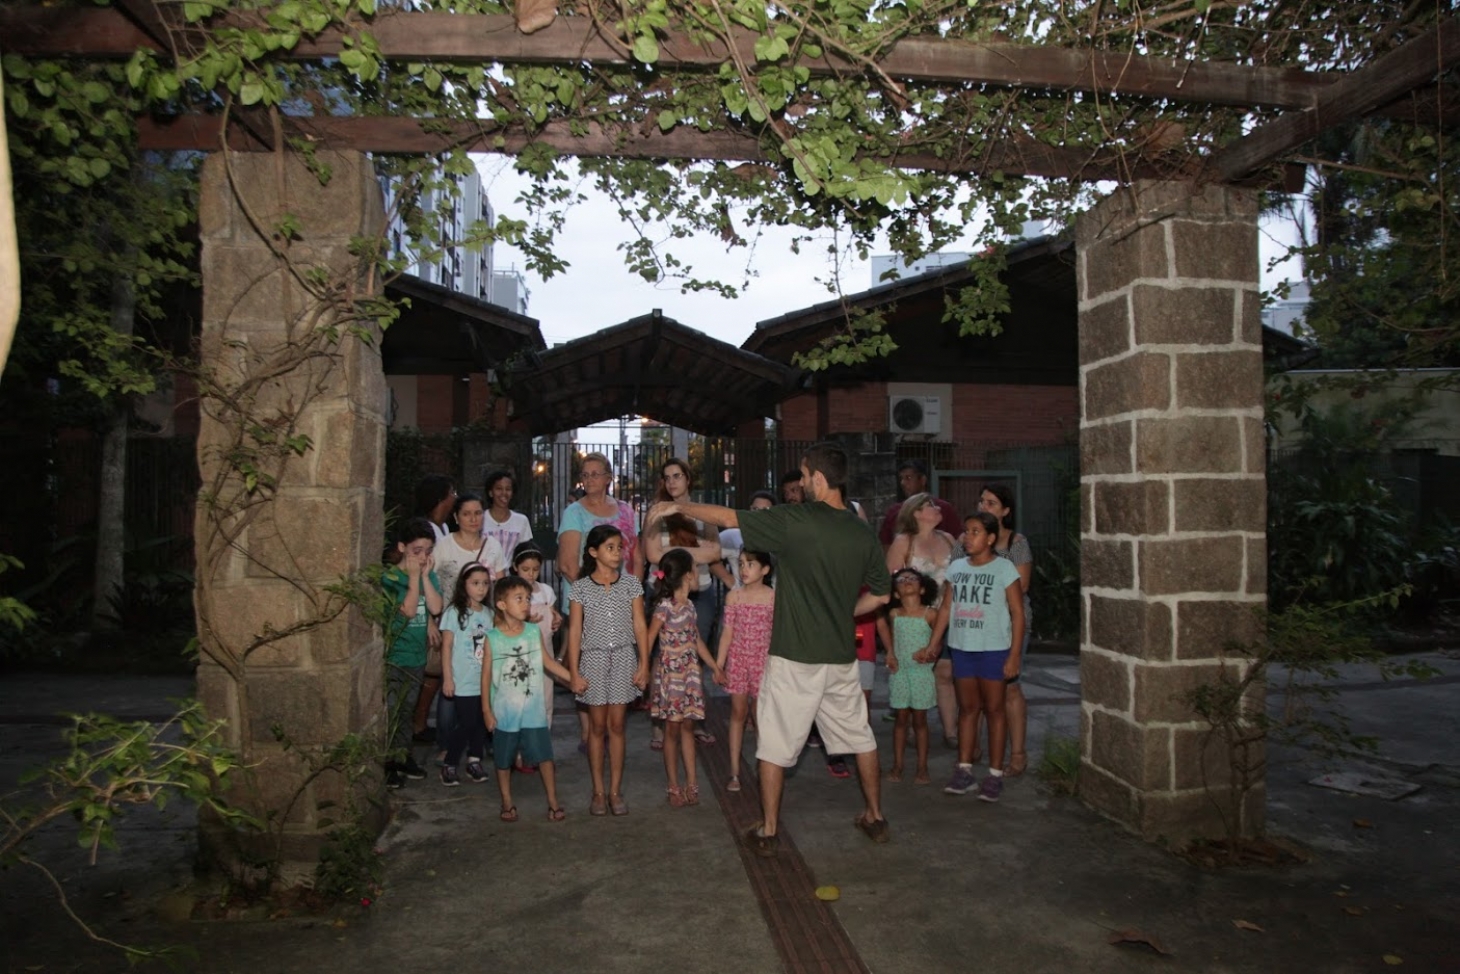 Orquidário de Santos inscreve para curso de férias e visitas noturnas | Jornal da Orla